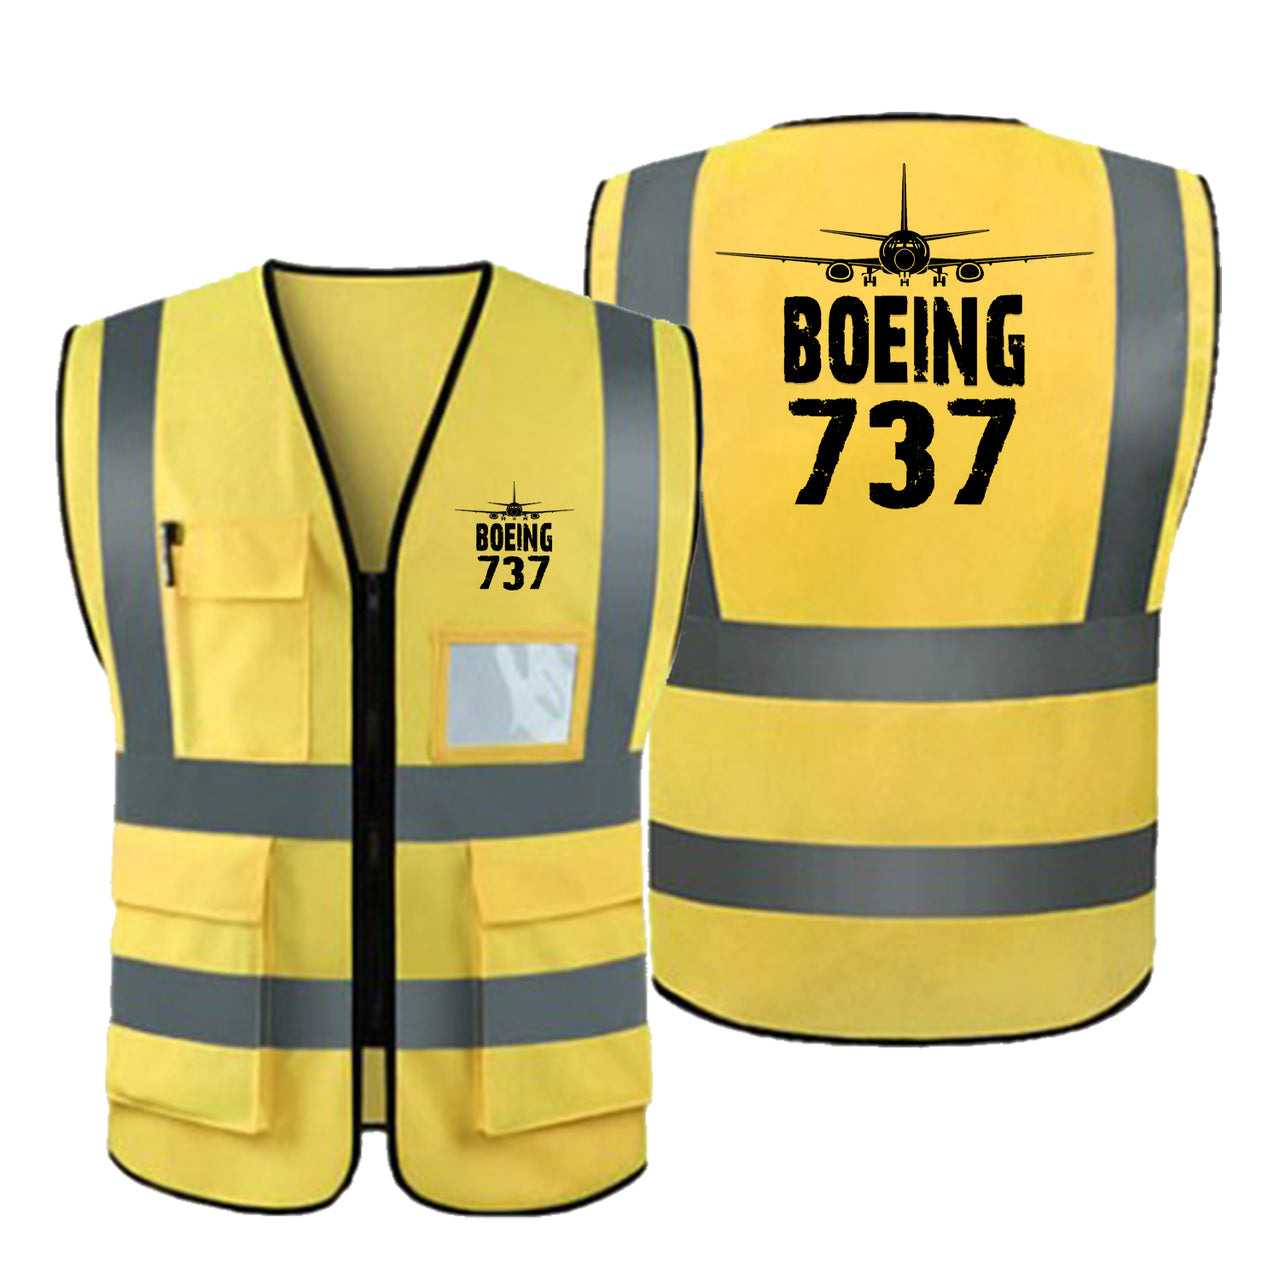 Boeing 737 & Plane Designed Reflective Vests